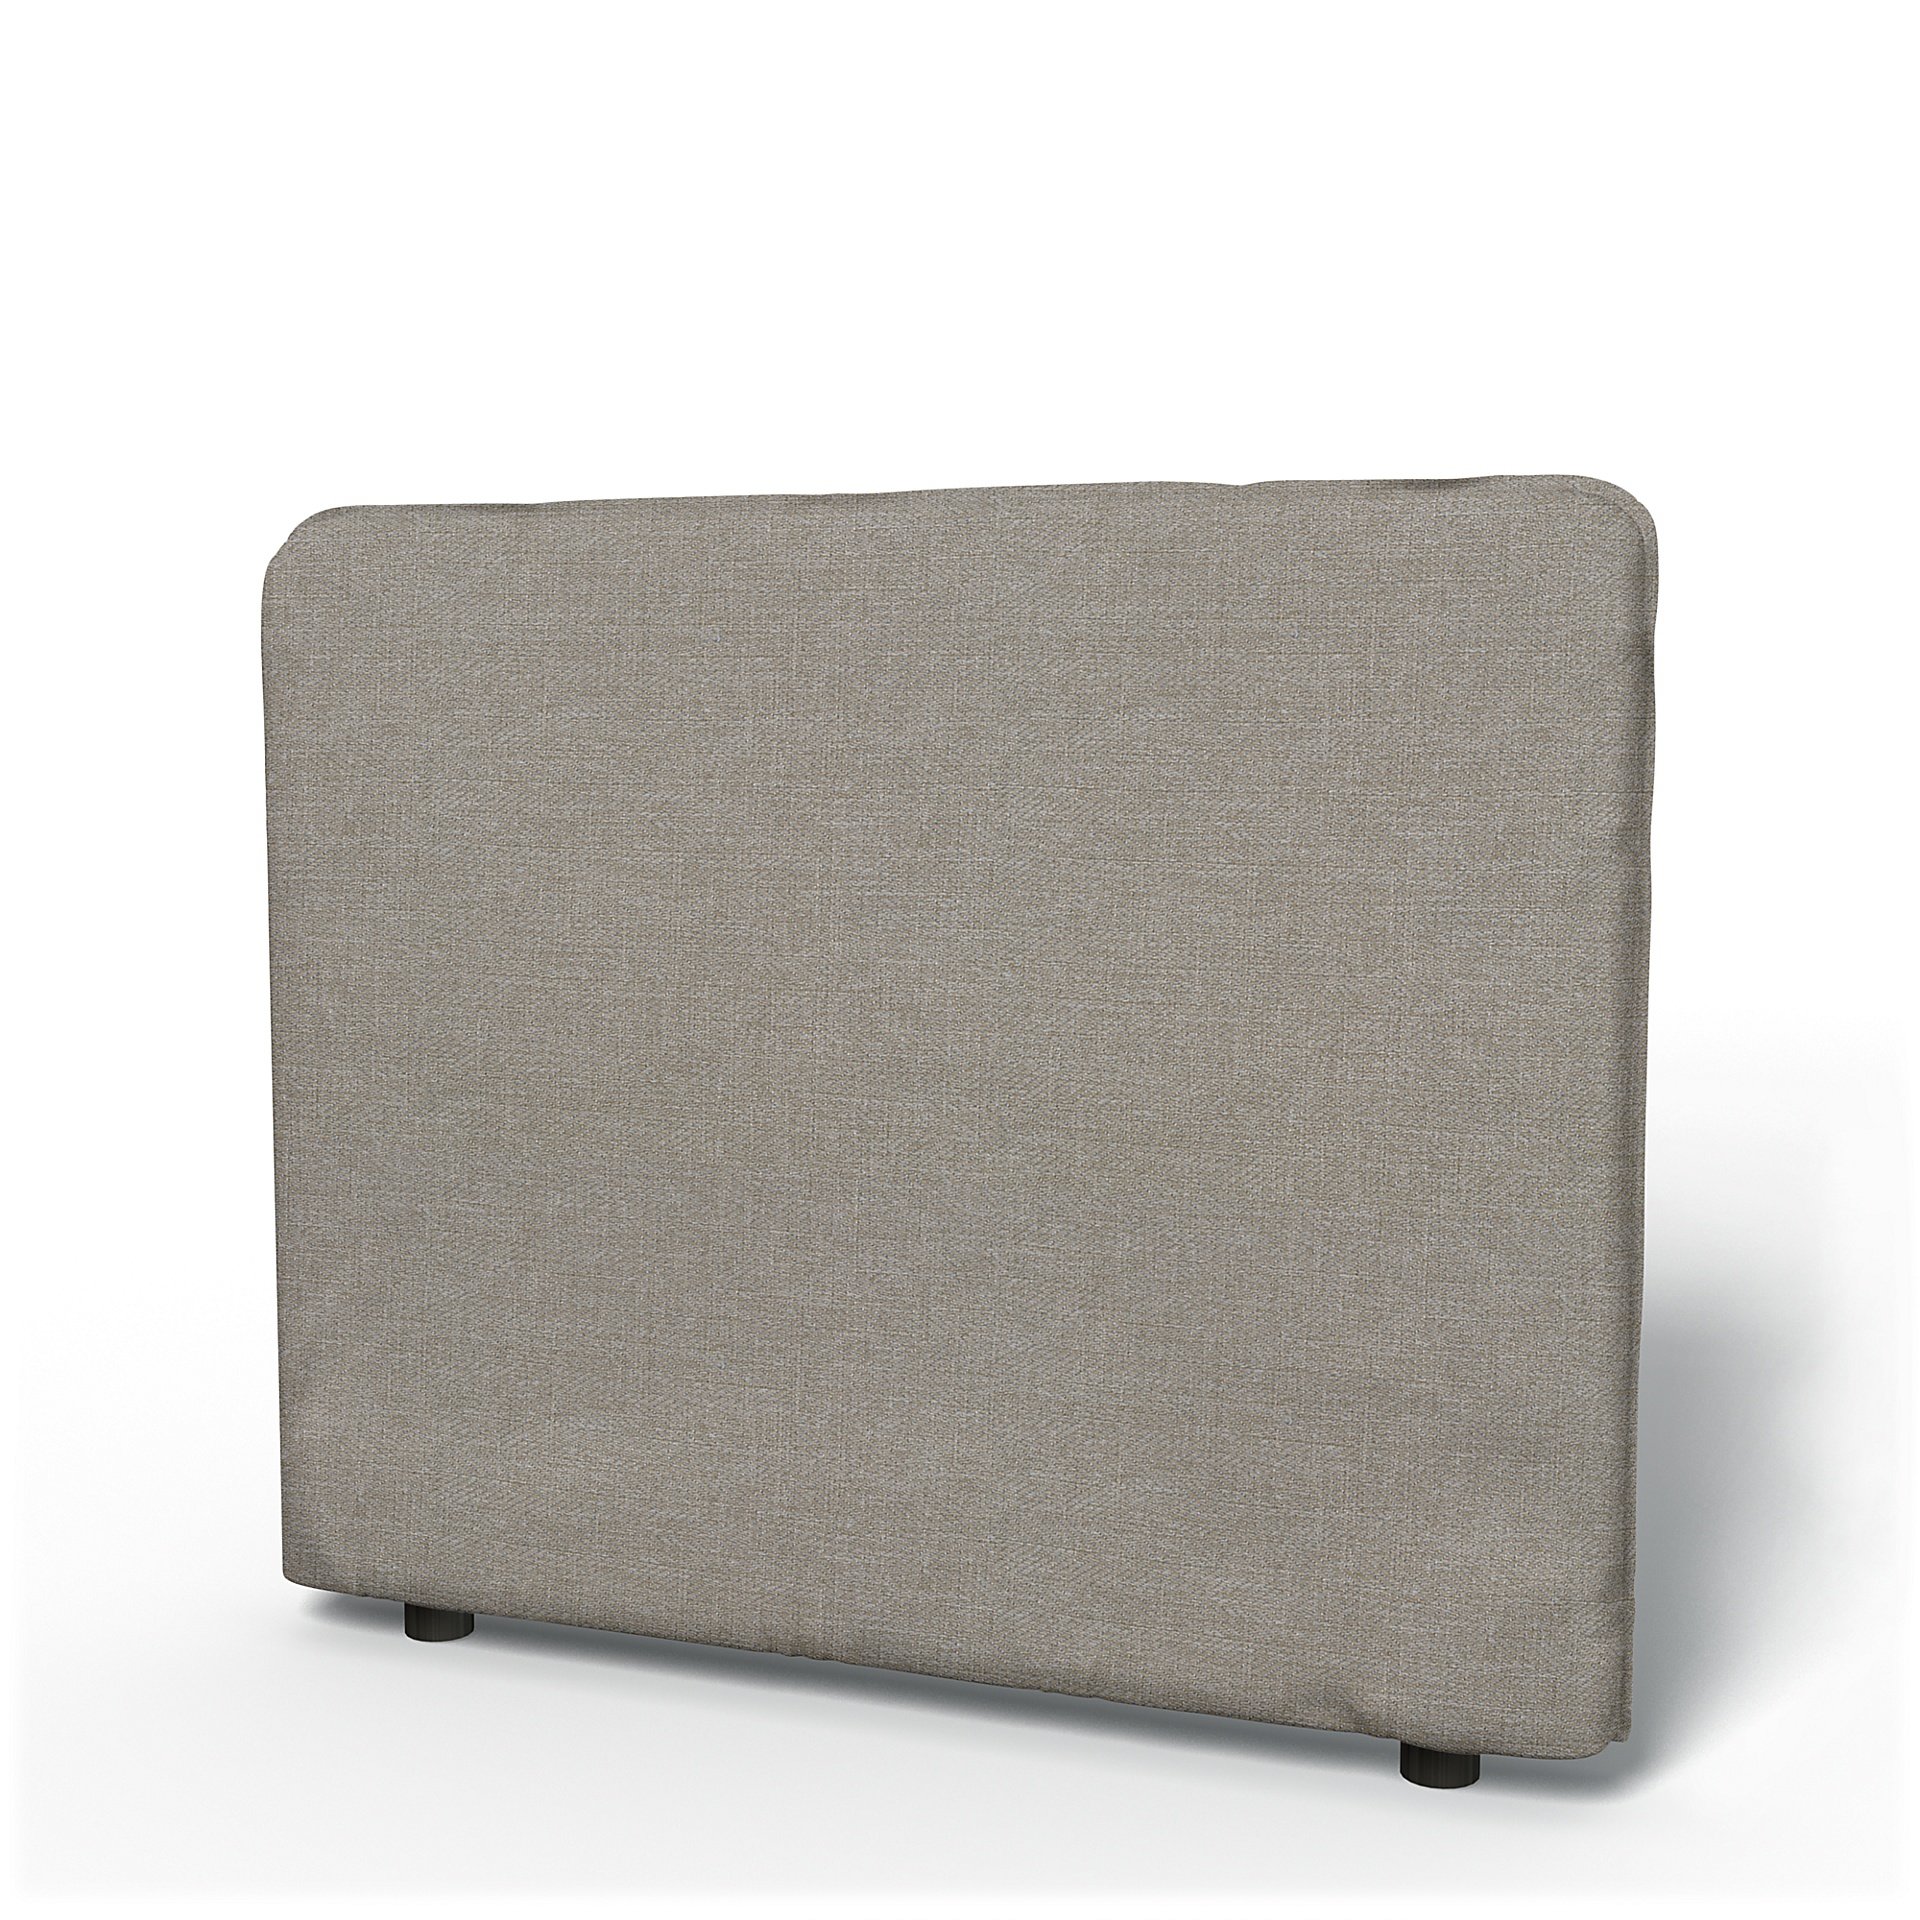 IKEA - Vallentuna Low Backrest Cover 100x80cm 39x32in, Greige, Boucle & Texture - Bemz